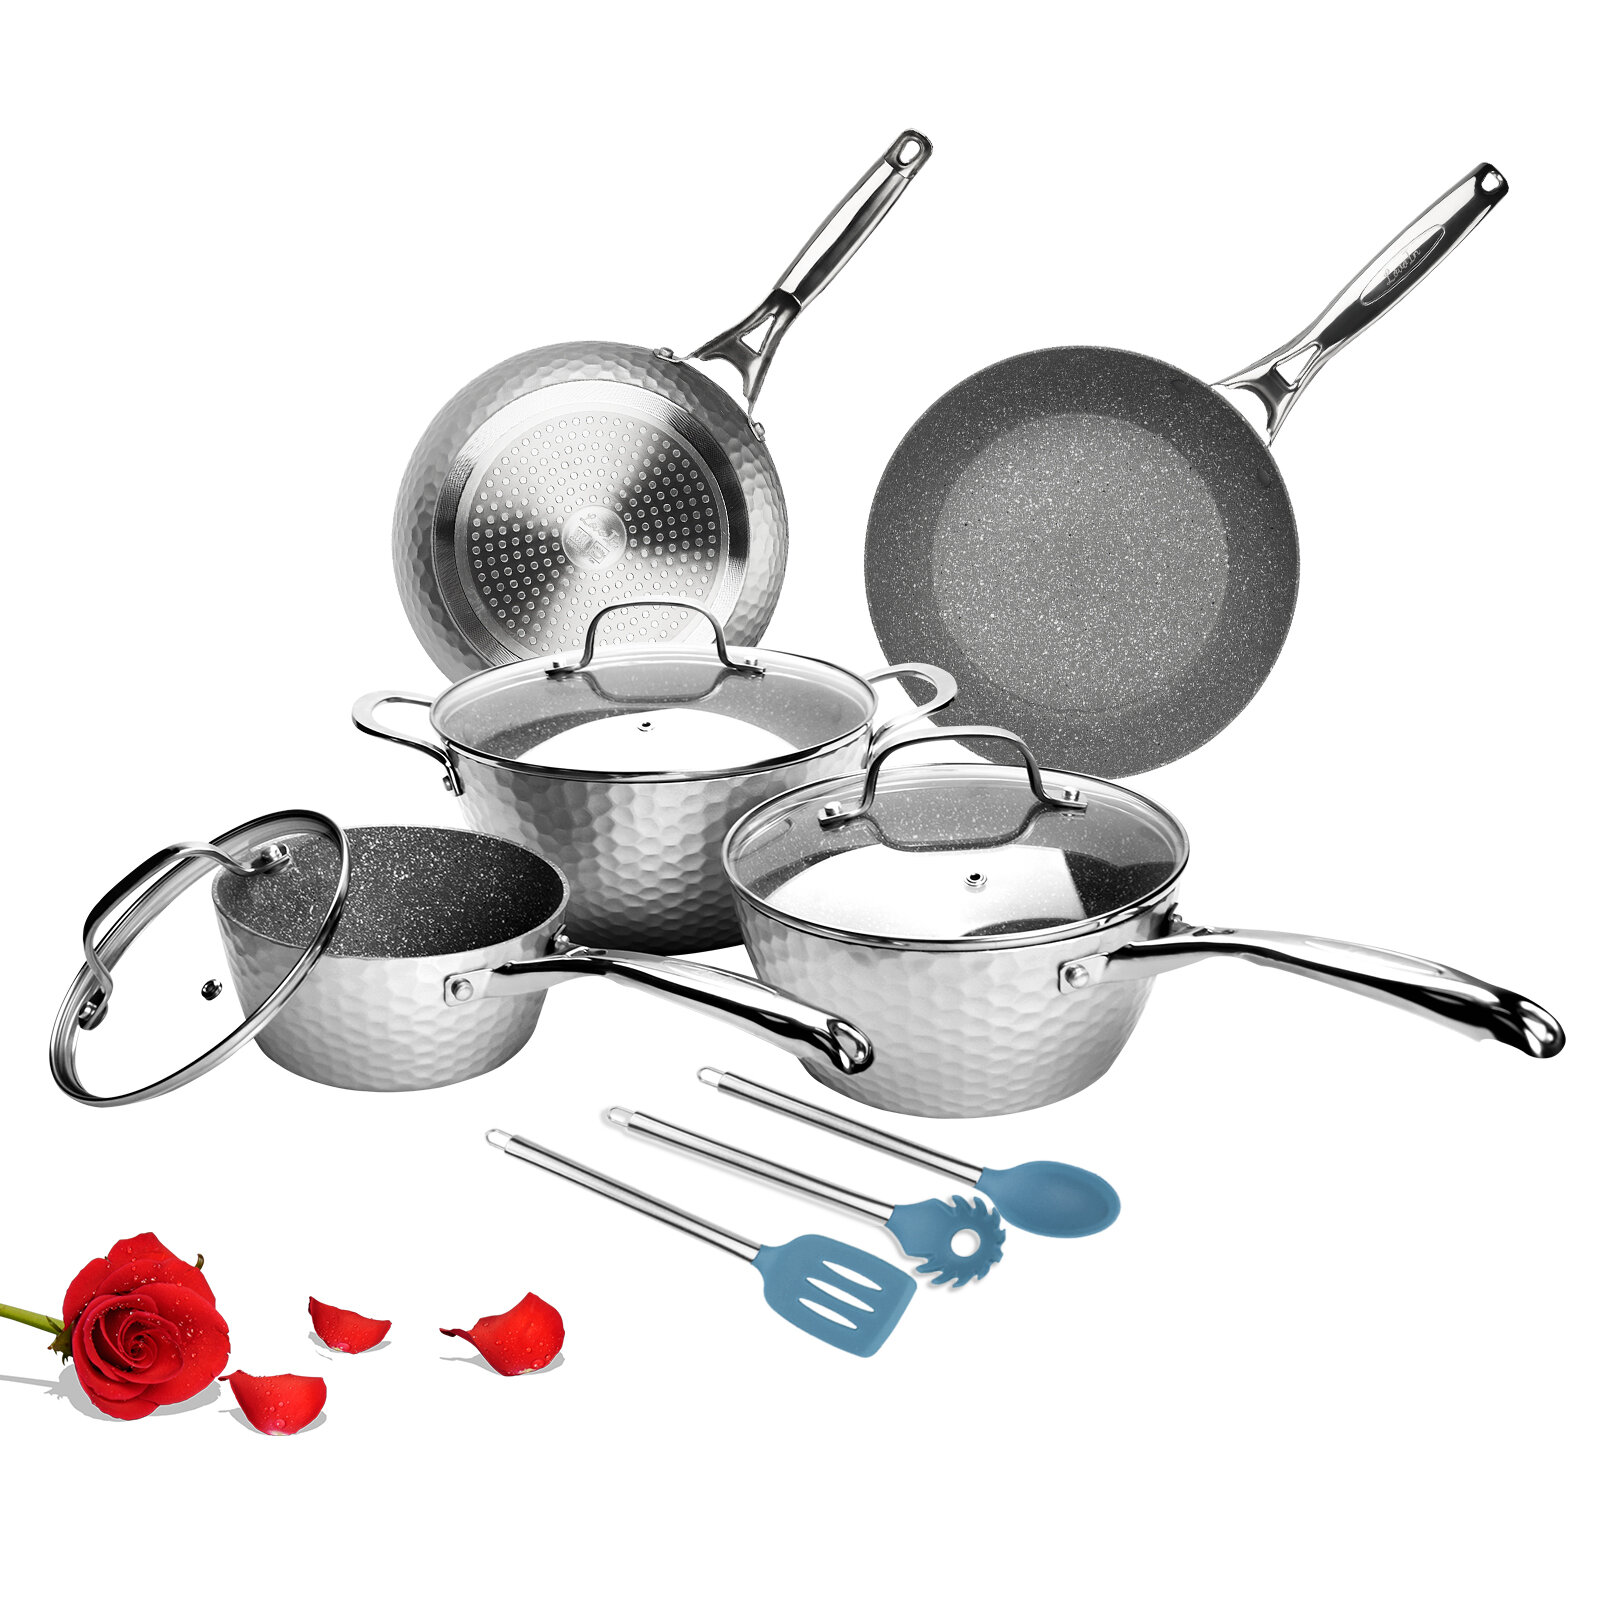 https://assets.wfcdn.com/im/27713741/compr-r85/1473/147304352/11-piece-non-stick-aluminum-cookware-set.jpg